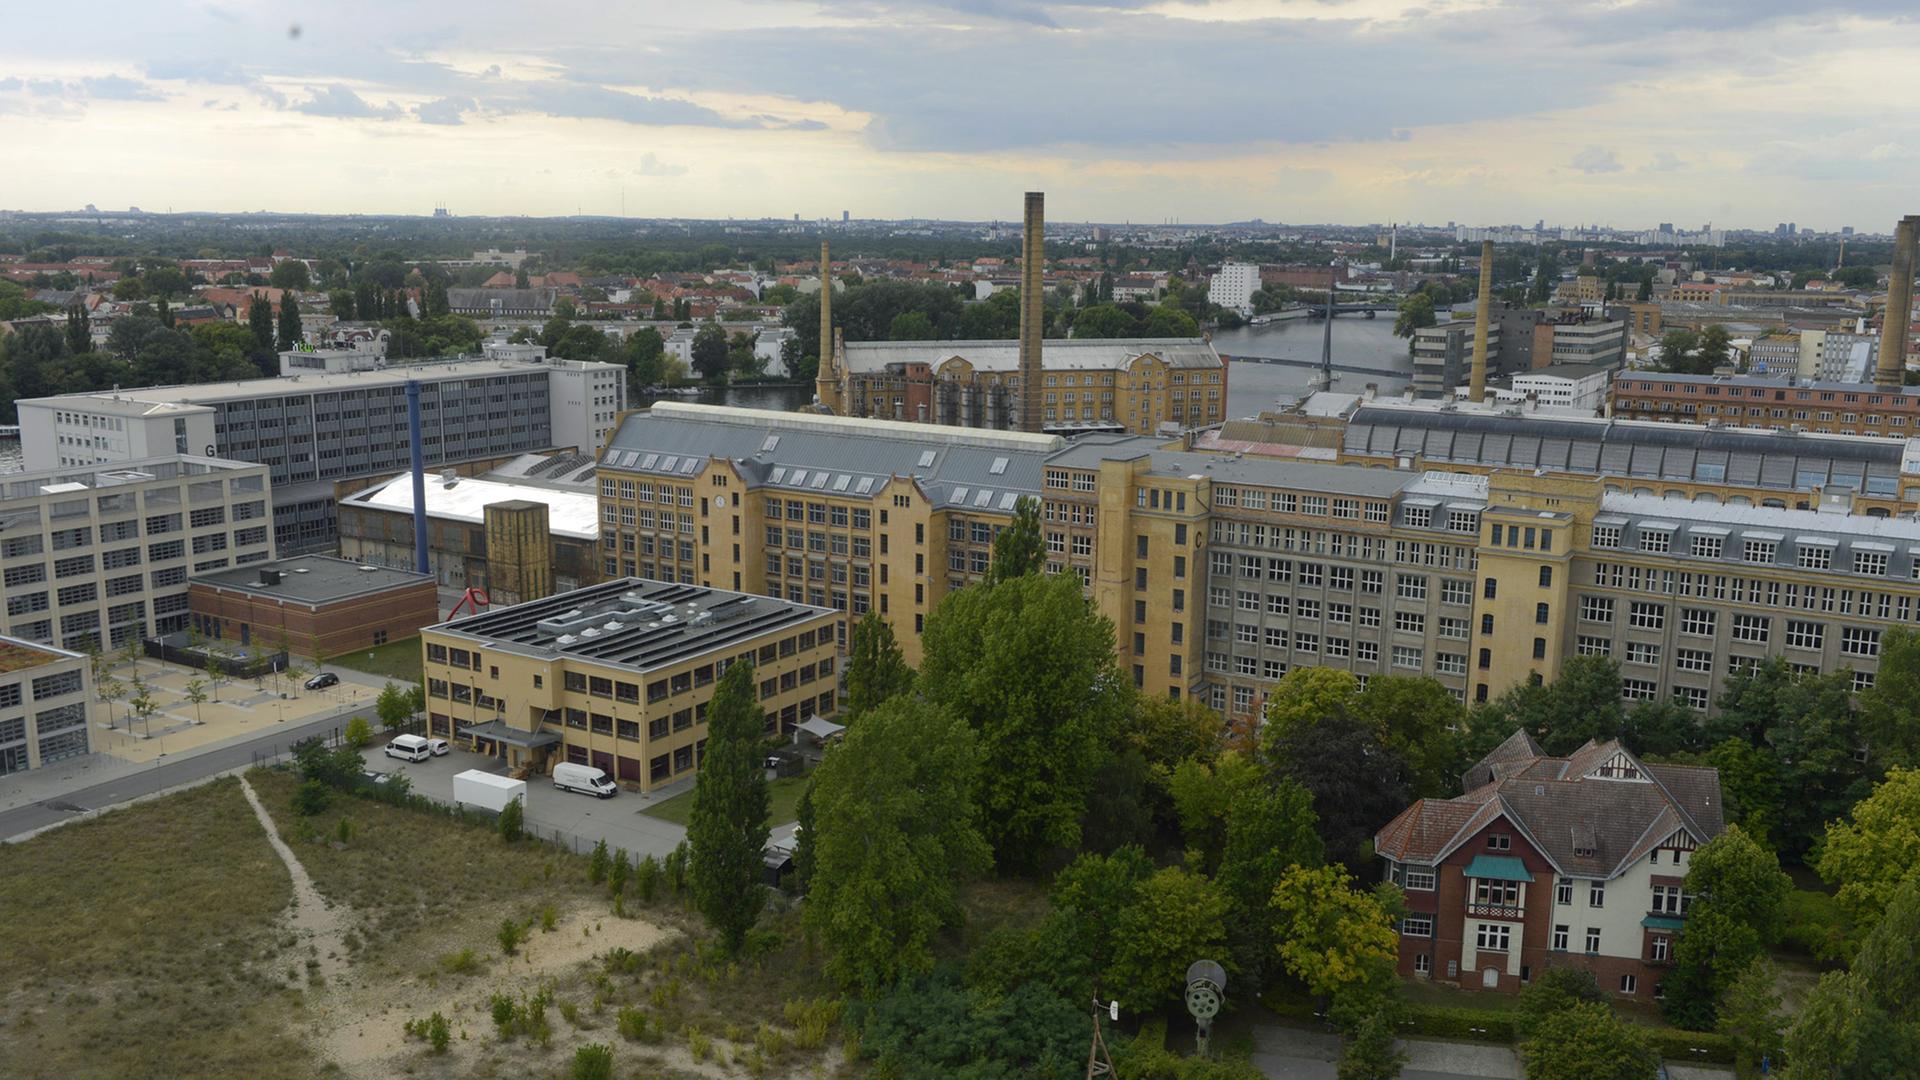 Blick vom Turm des Peter-Behrens-Baus in der Ostendstraße auf die Industrieanlagen in Oberschöneweide im Bezirk Berlin-Köpenick